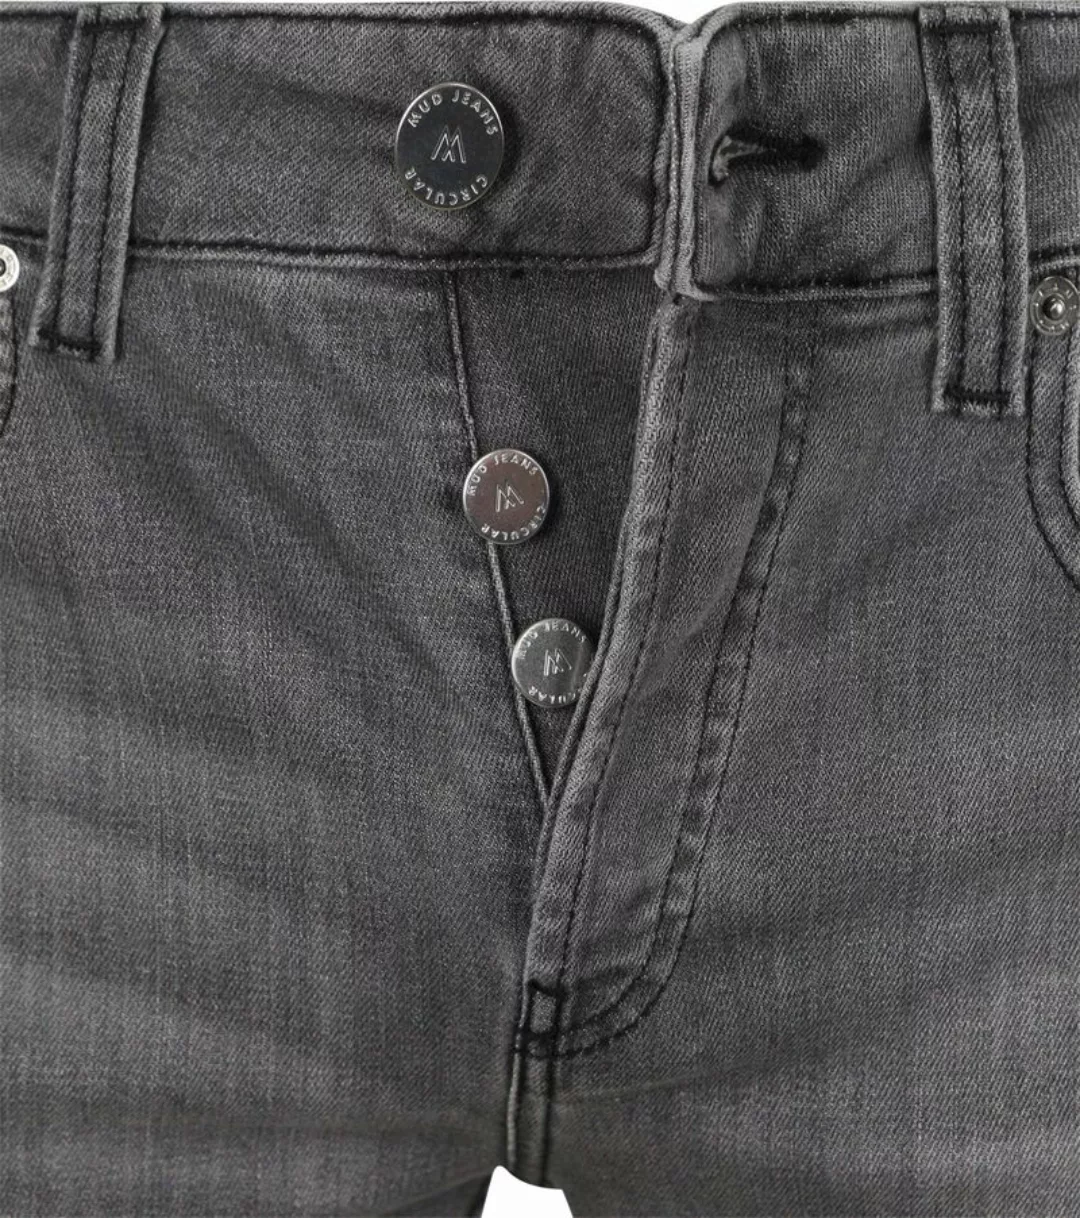 MUD Jeans Denim Slim-Fit Grau - Größe W 32 - L 34 günstig online kaufen